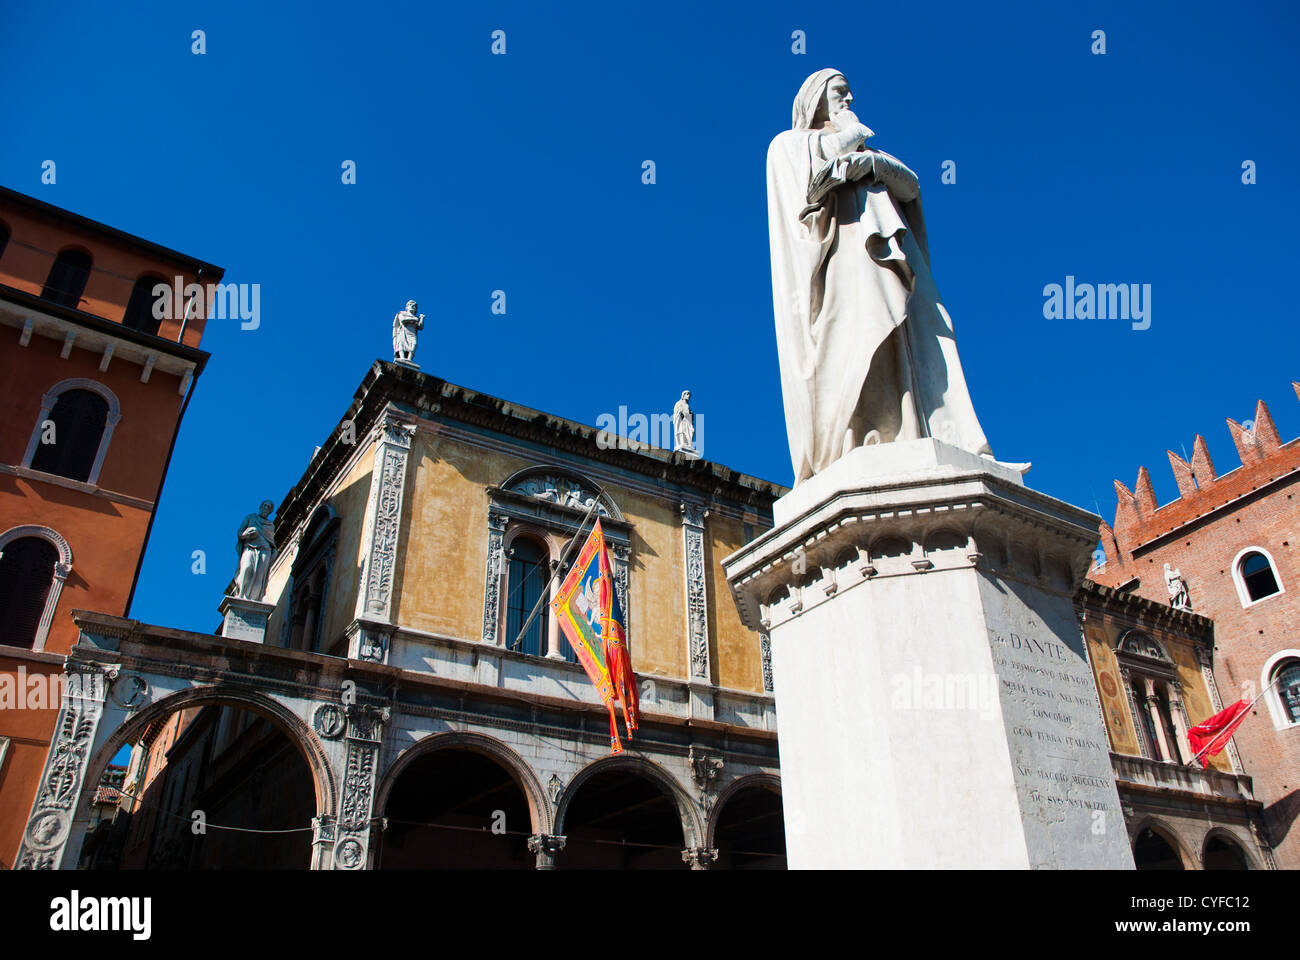 Piazza dei Signori, également connu sous le nom de Piazza Dante à Vérone avec diverses autour de la place des palais et une statue de Dante Alighieri Banque D'Images